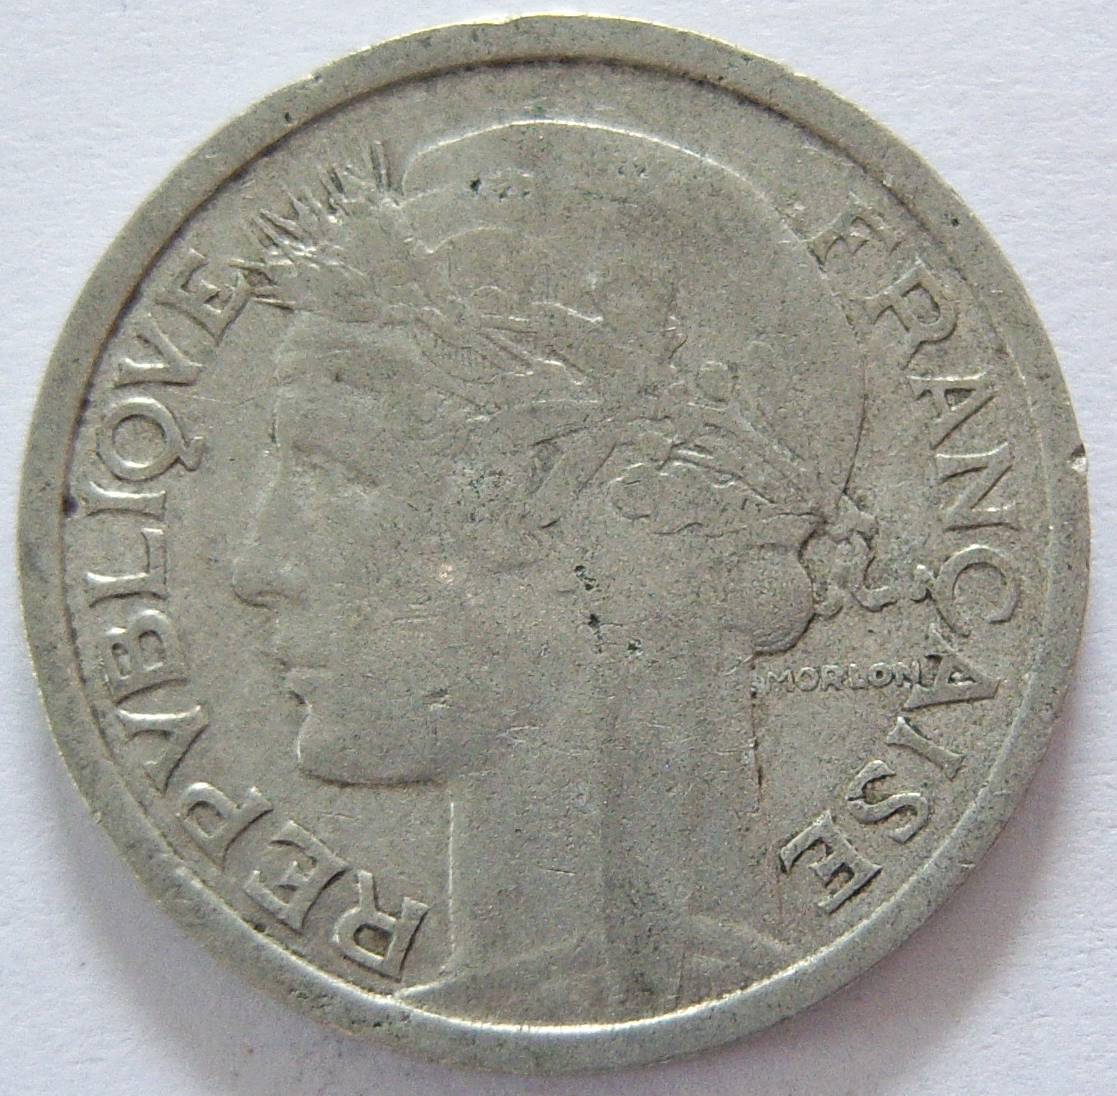  Frankreich 1 Franc 1948 B   